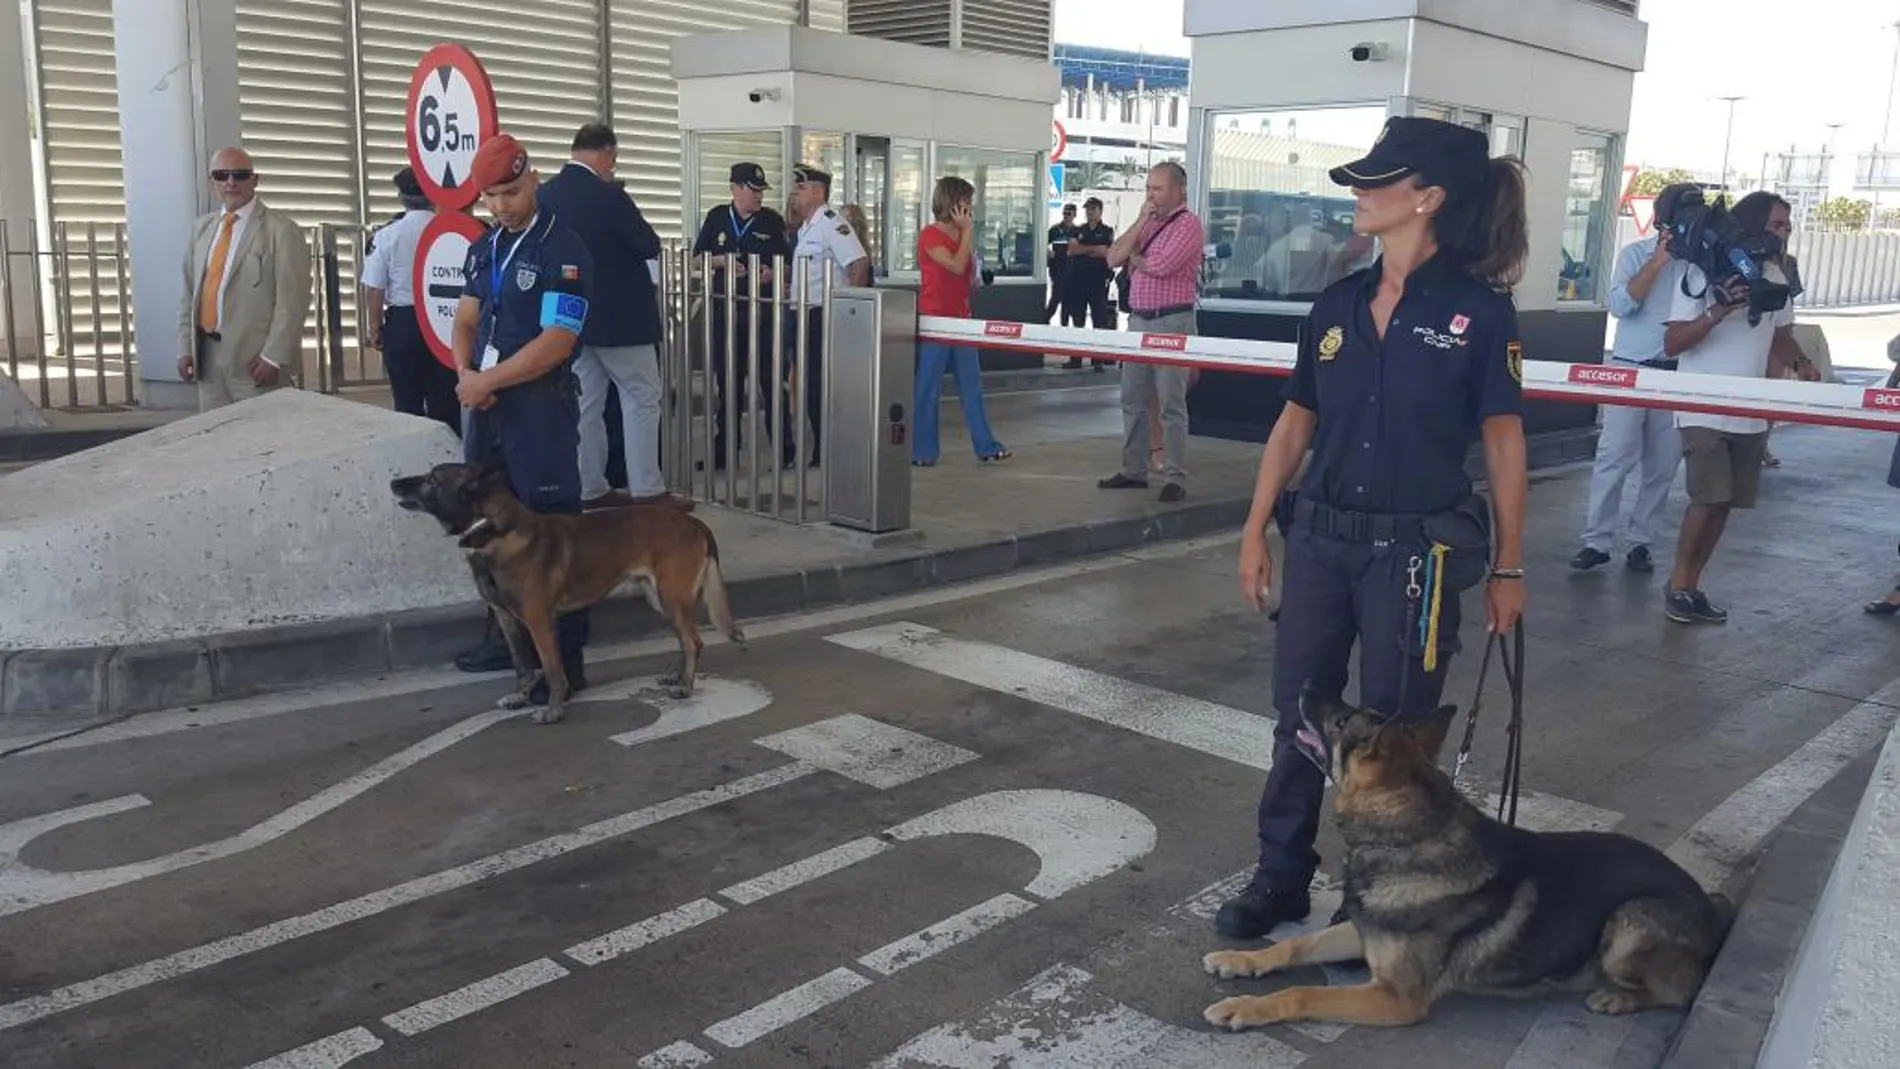 La Policía Nacional inicia junto a FRONTEX la operación Minerva’16 en los puertos de Algeciras, Tarifa y Ceuta